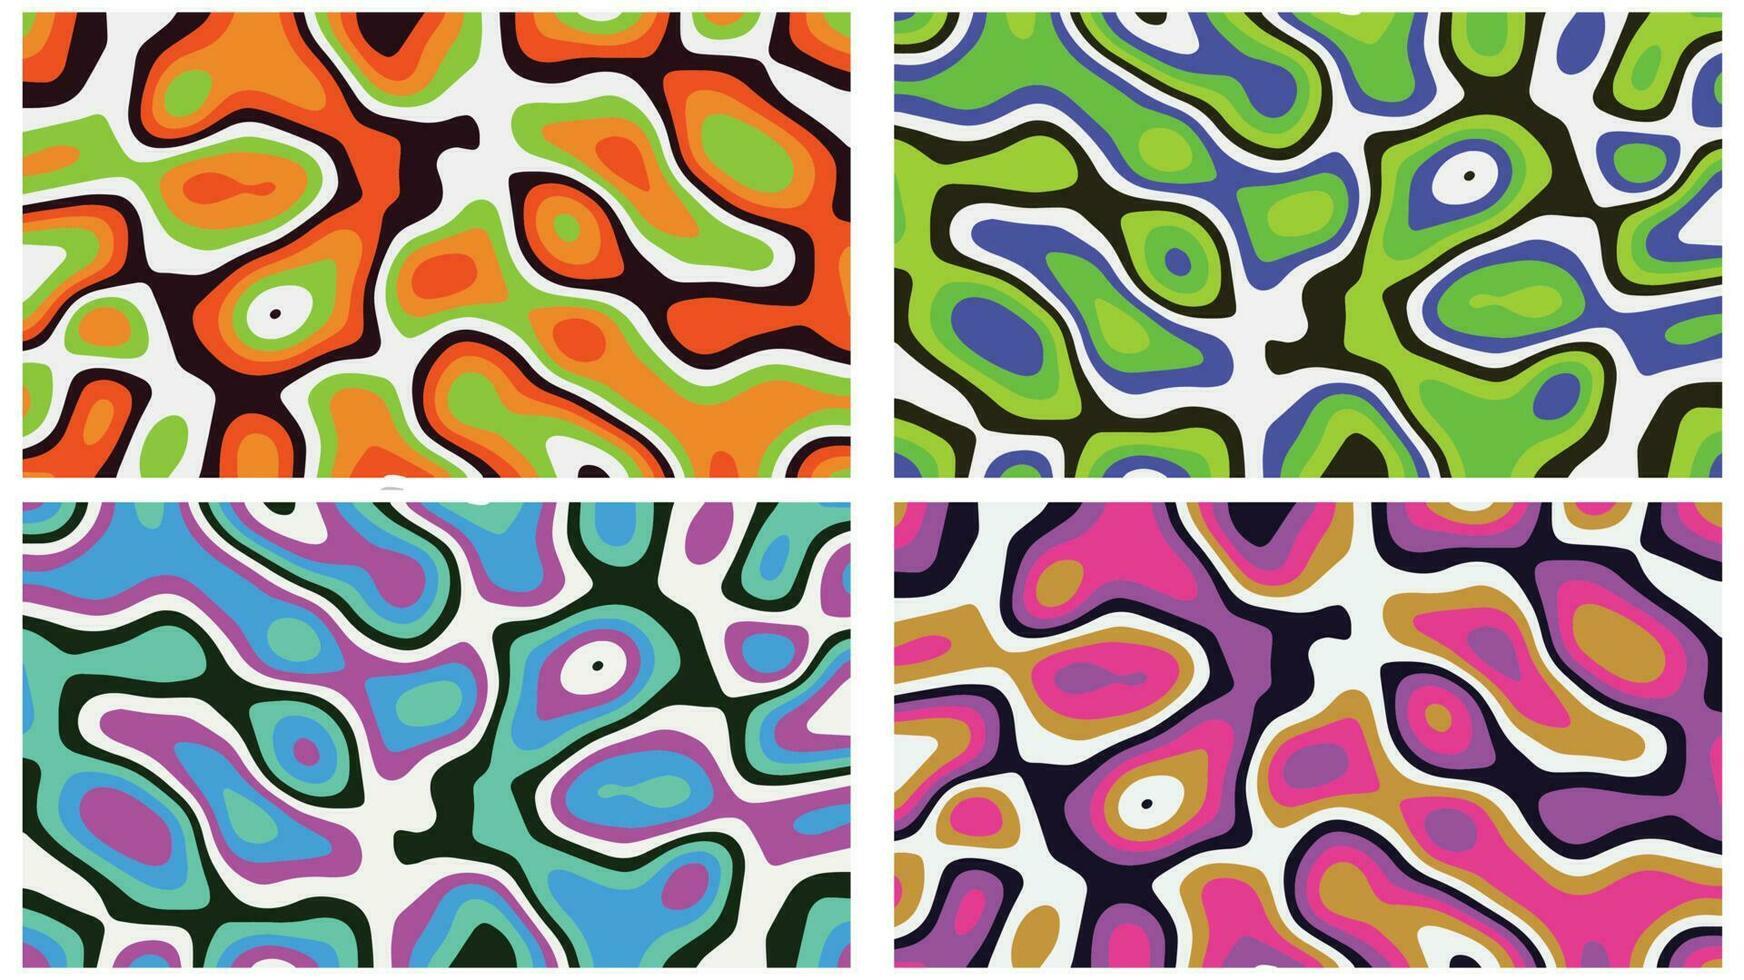 kleurrijk abstract achtergrond met papier kunst vormen met papier besnoeiing vormen vector